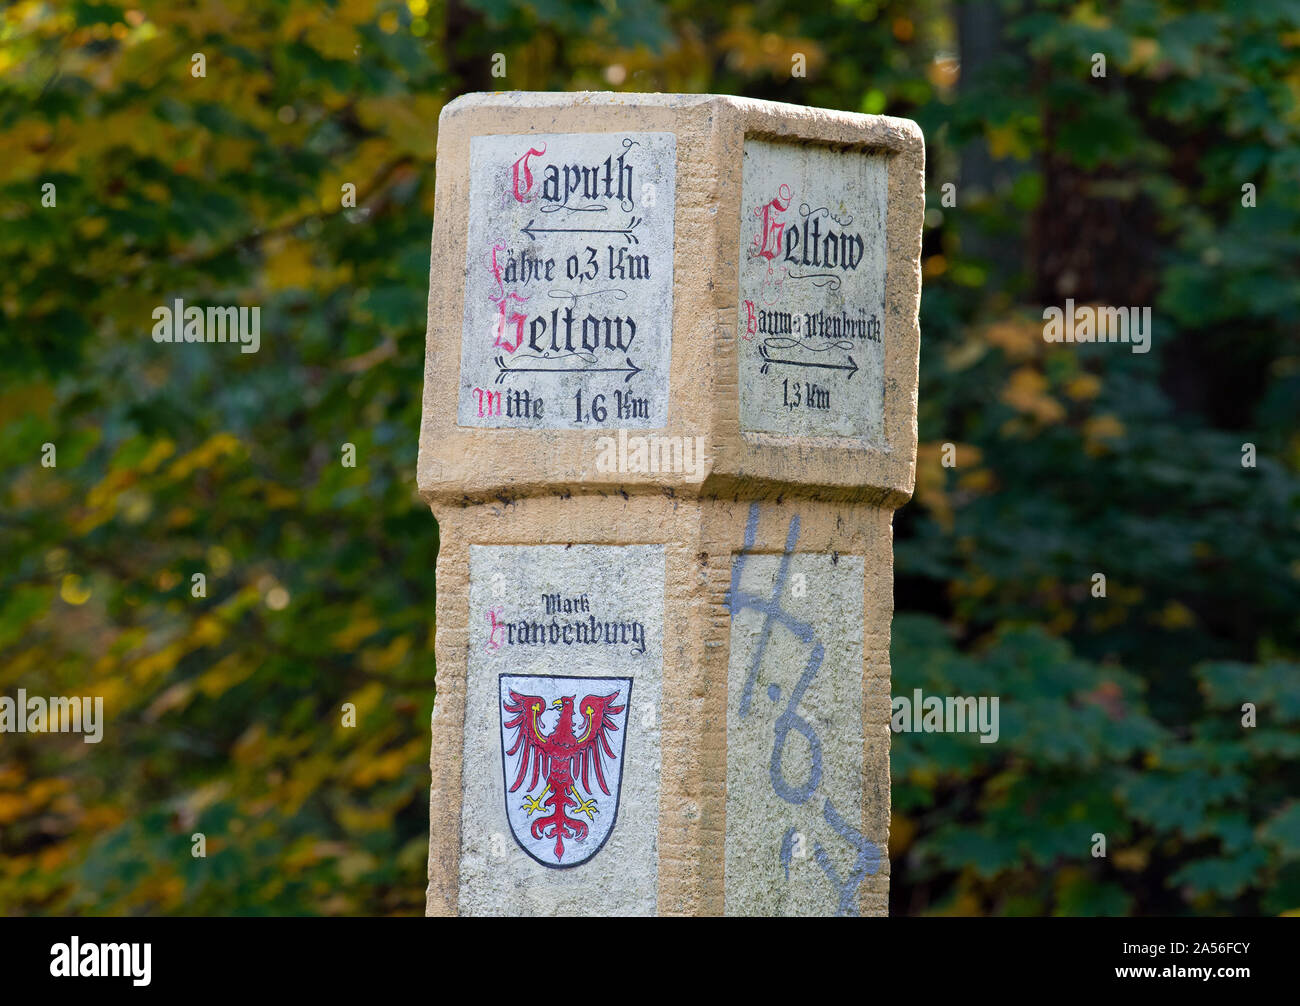 Caputh, Alemania. 14 Oct, 2019. La ruta de ferry Caputh, Geltow y Baumgartenbrück está indicada en una piedra ligeramente capeado junto al puente sobre el Wentorf Graben. Crédito: Soeren Bozo/dpa-Zentralbild/ZB/dpa/Alamy Live News Foto de stock